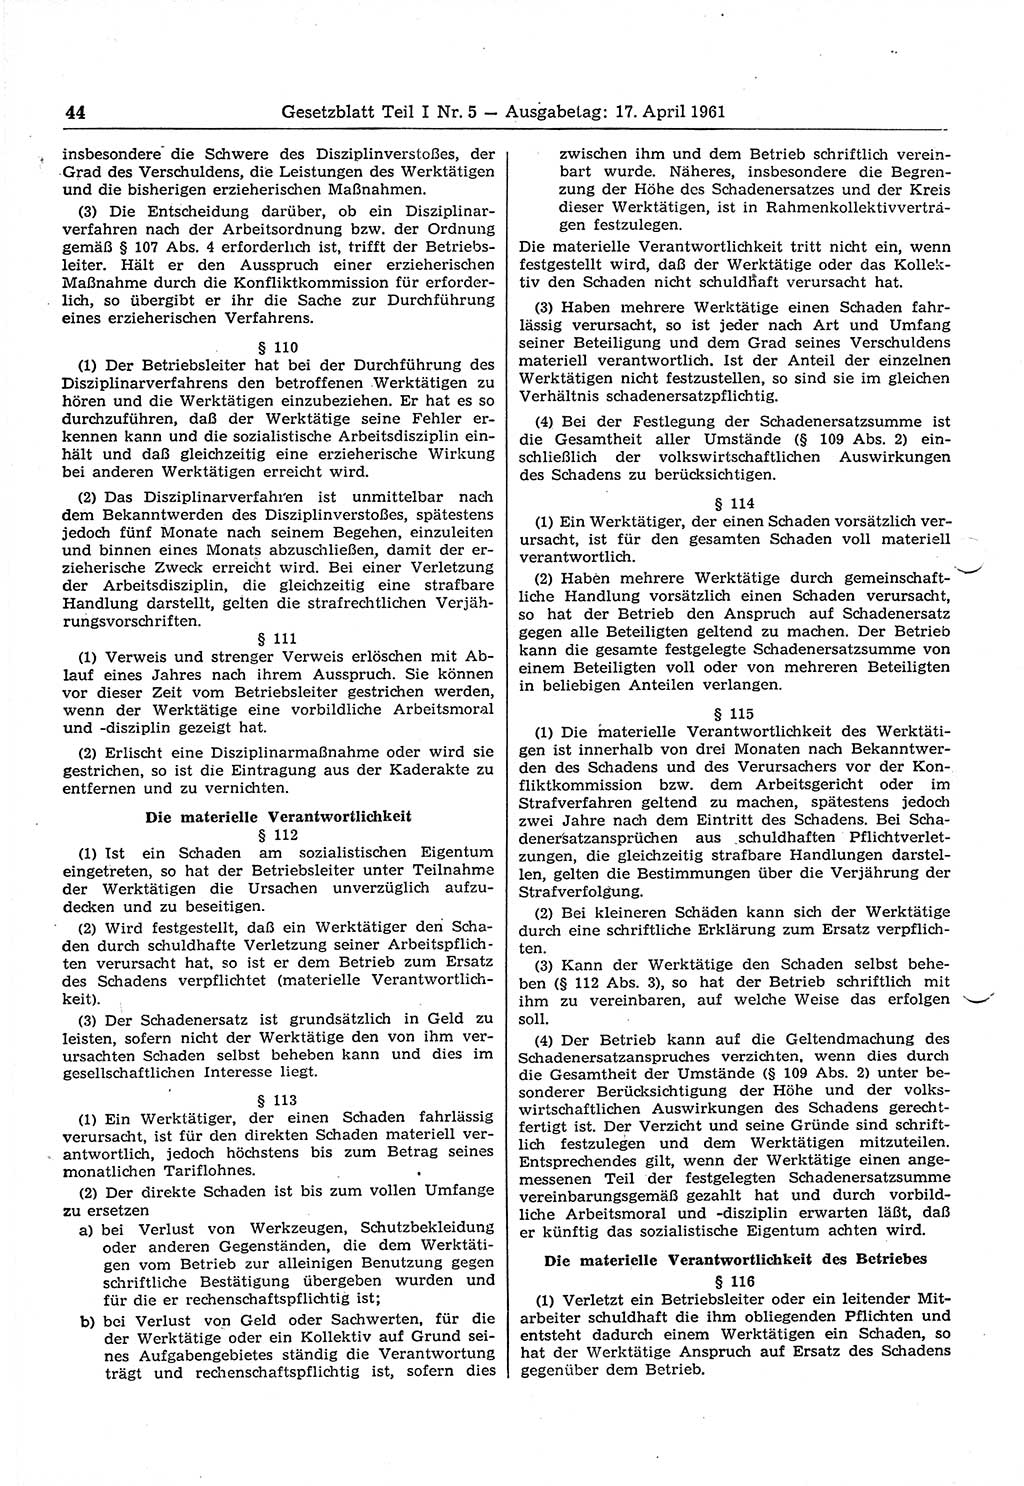 Gesetzblatt (GBl.) der Deutschen Demokratischen Republik (DDR) Teil Ⅰ 1961, Seite 44 (GBl. DDR Ⅰ 1961, S. 44)